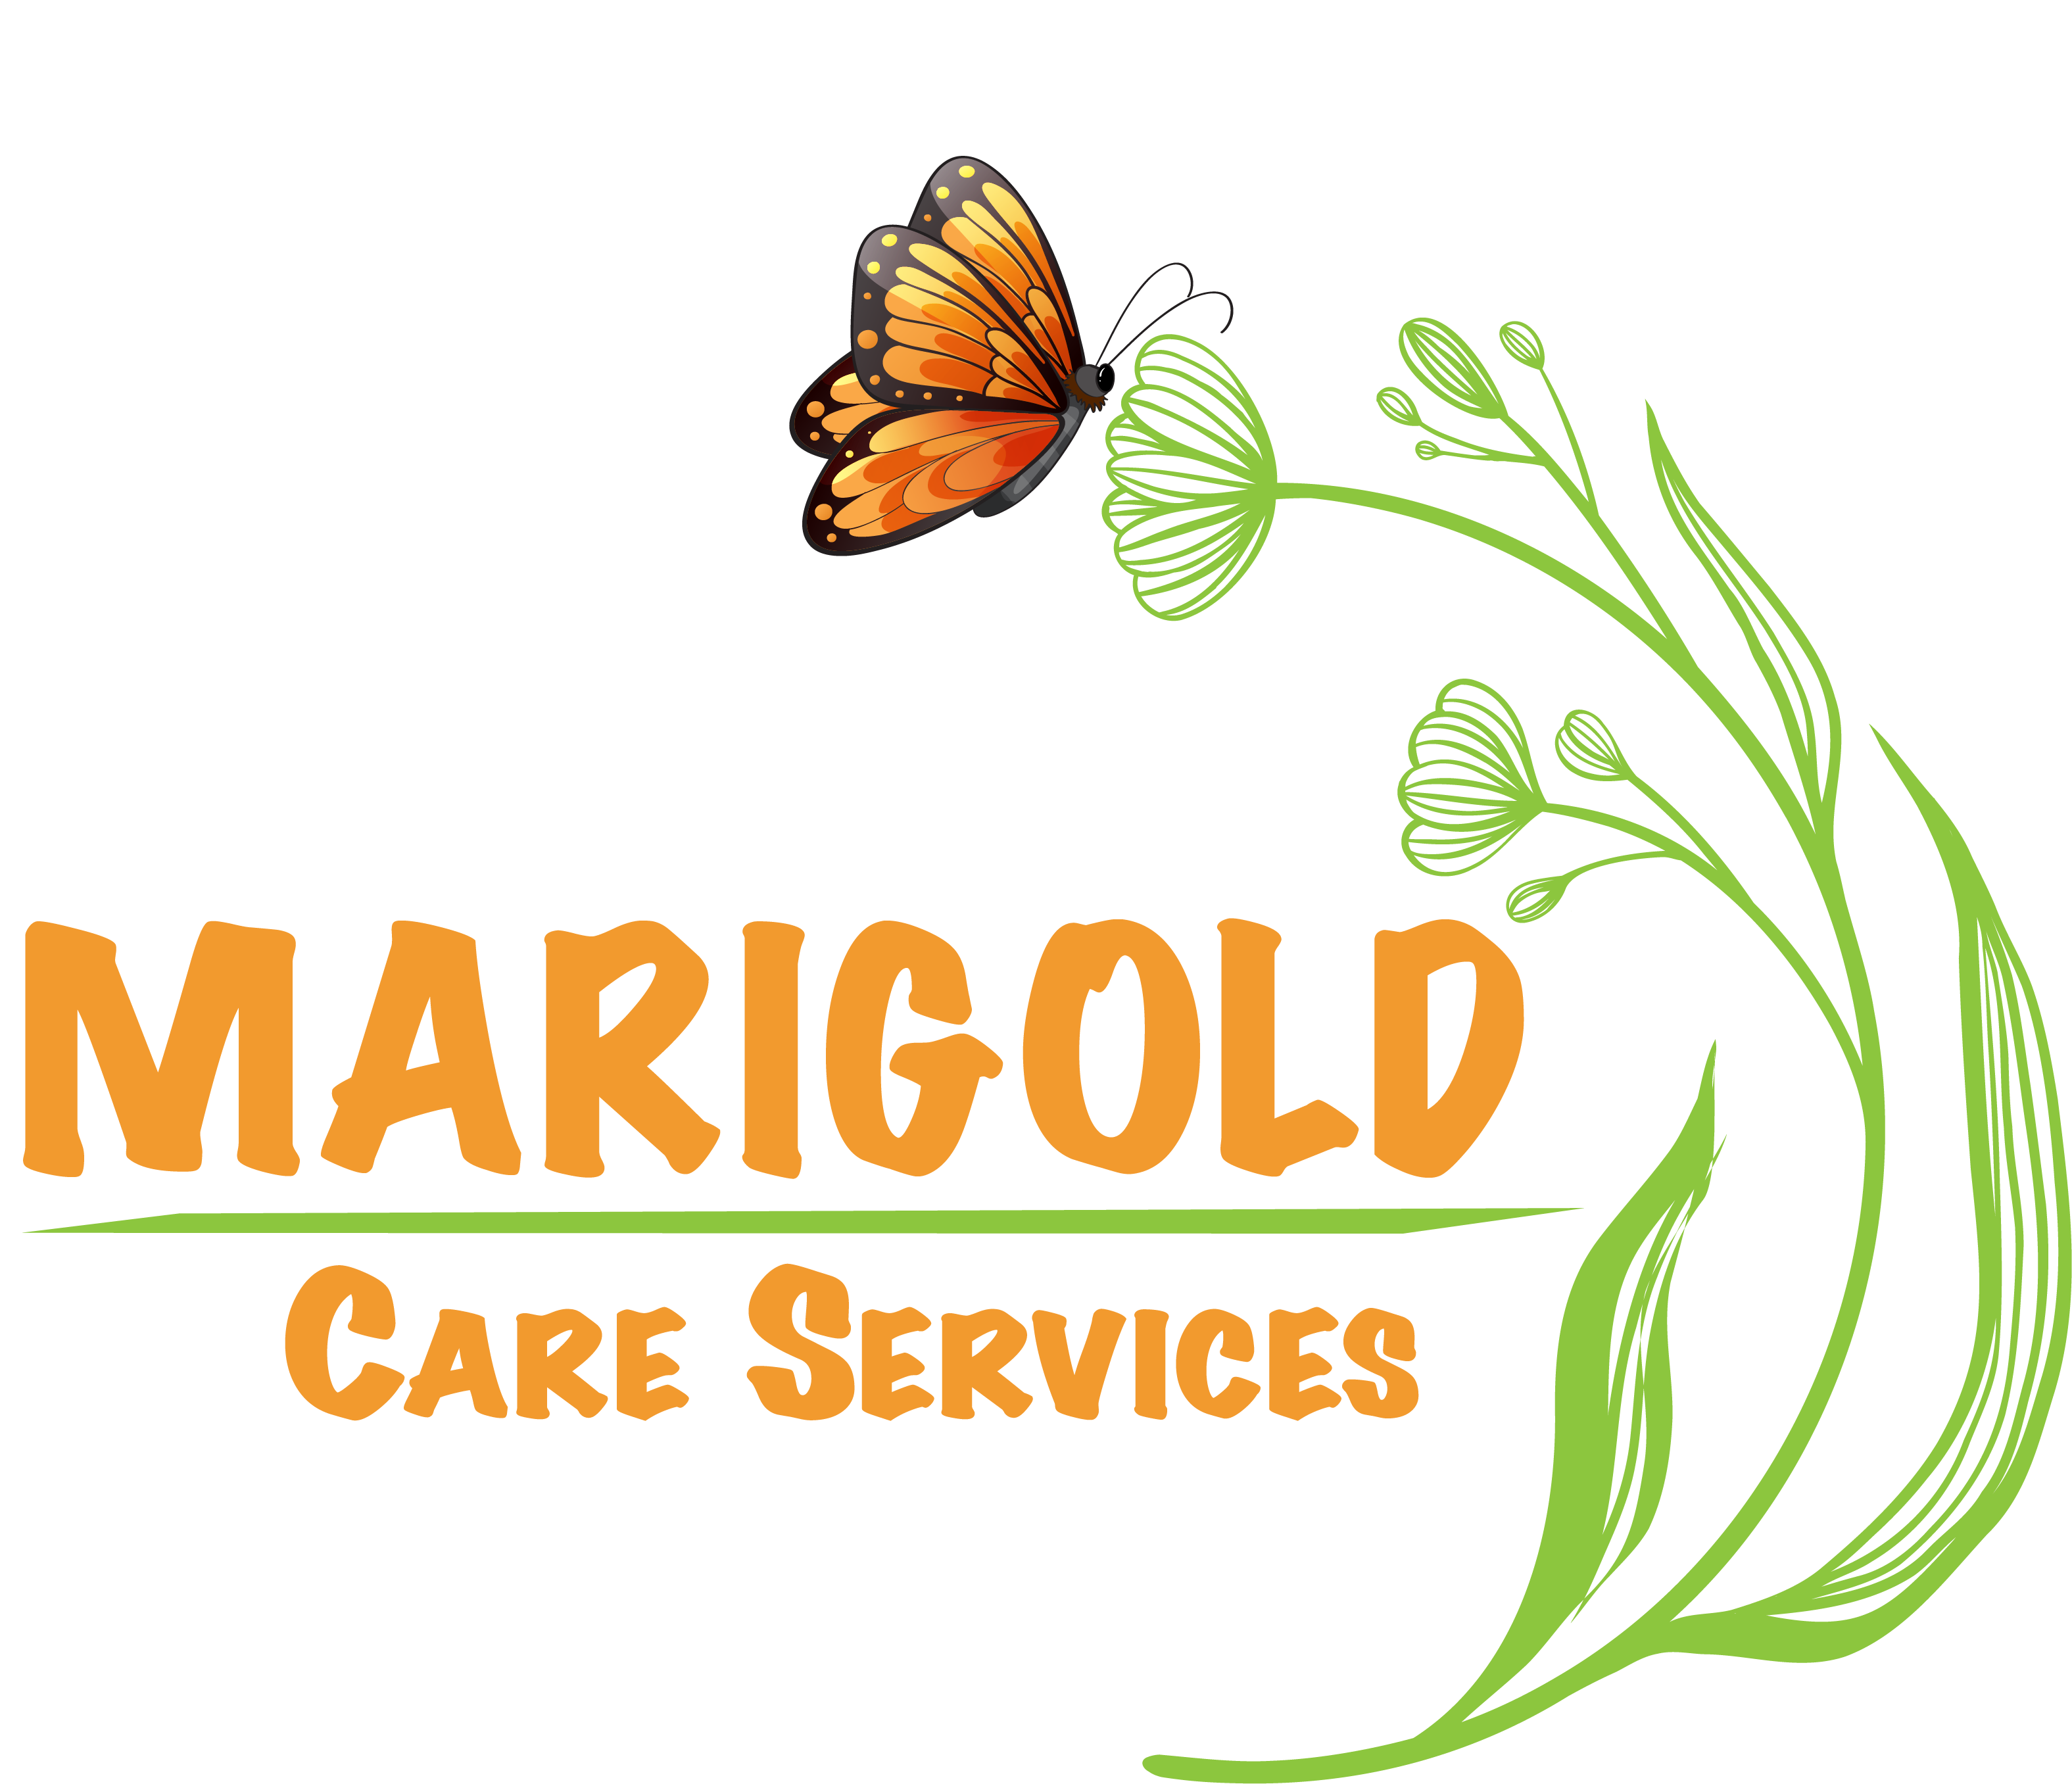 Marigold Care Services logo